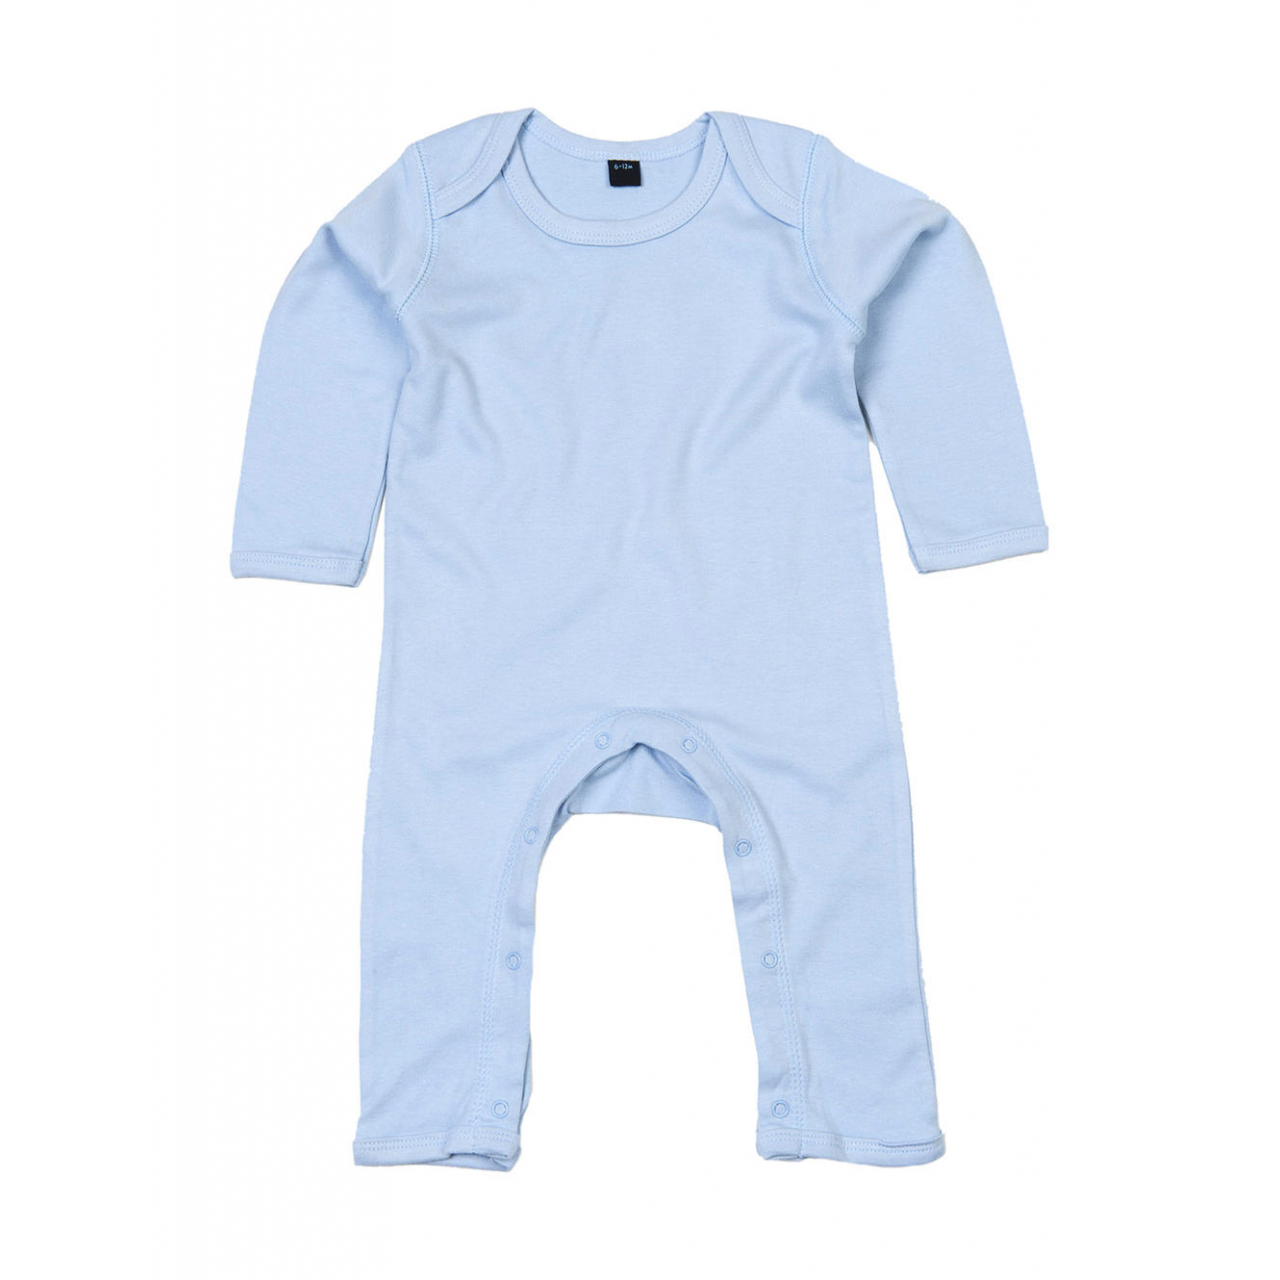 Dětské pyžamo Babybugz - světle modré, 6-12 měsíců